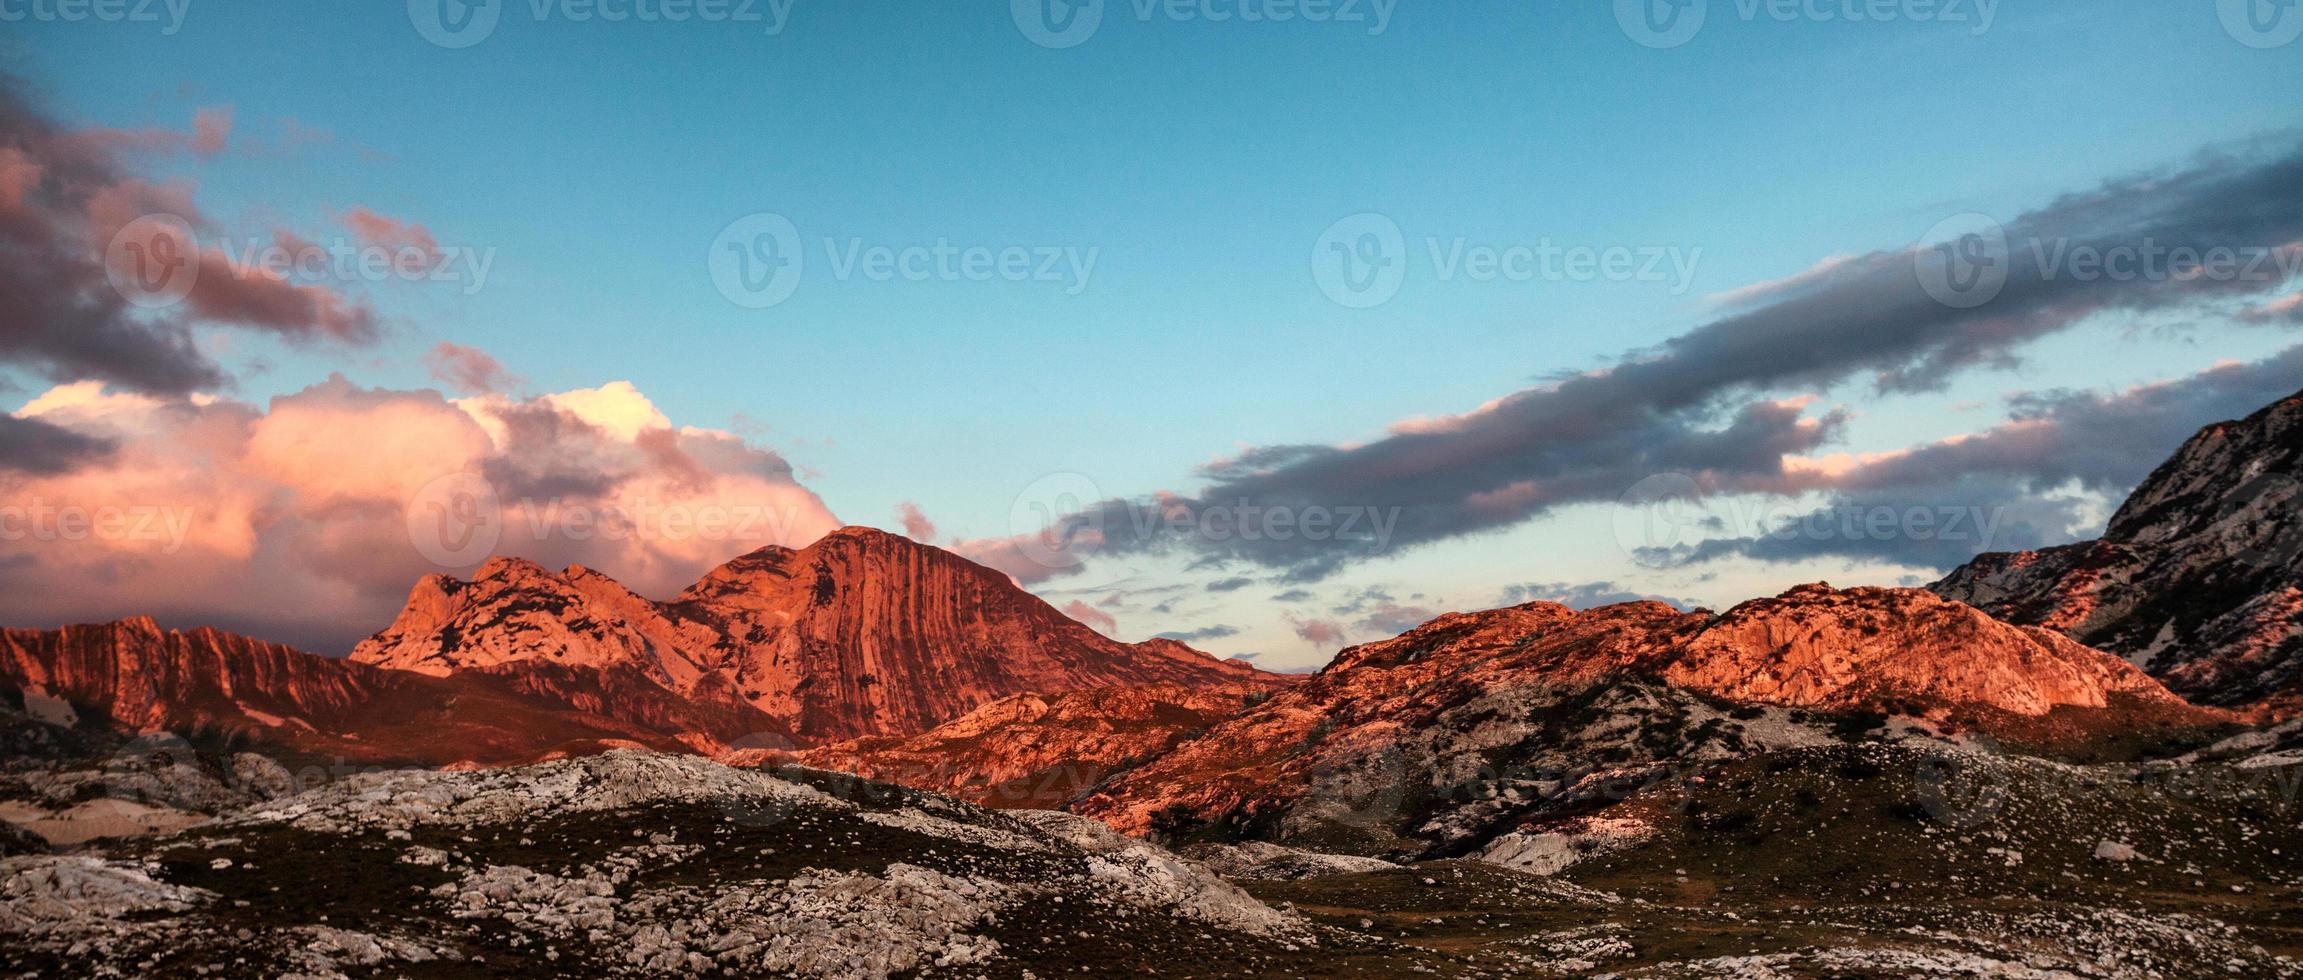 montañas rocosas de montenegro letterbox foto